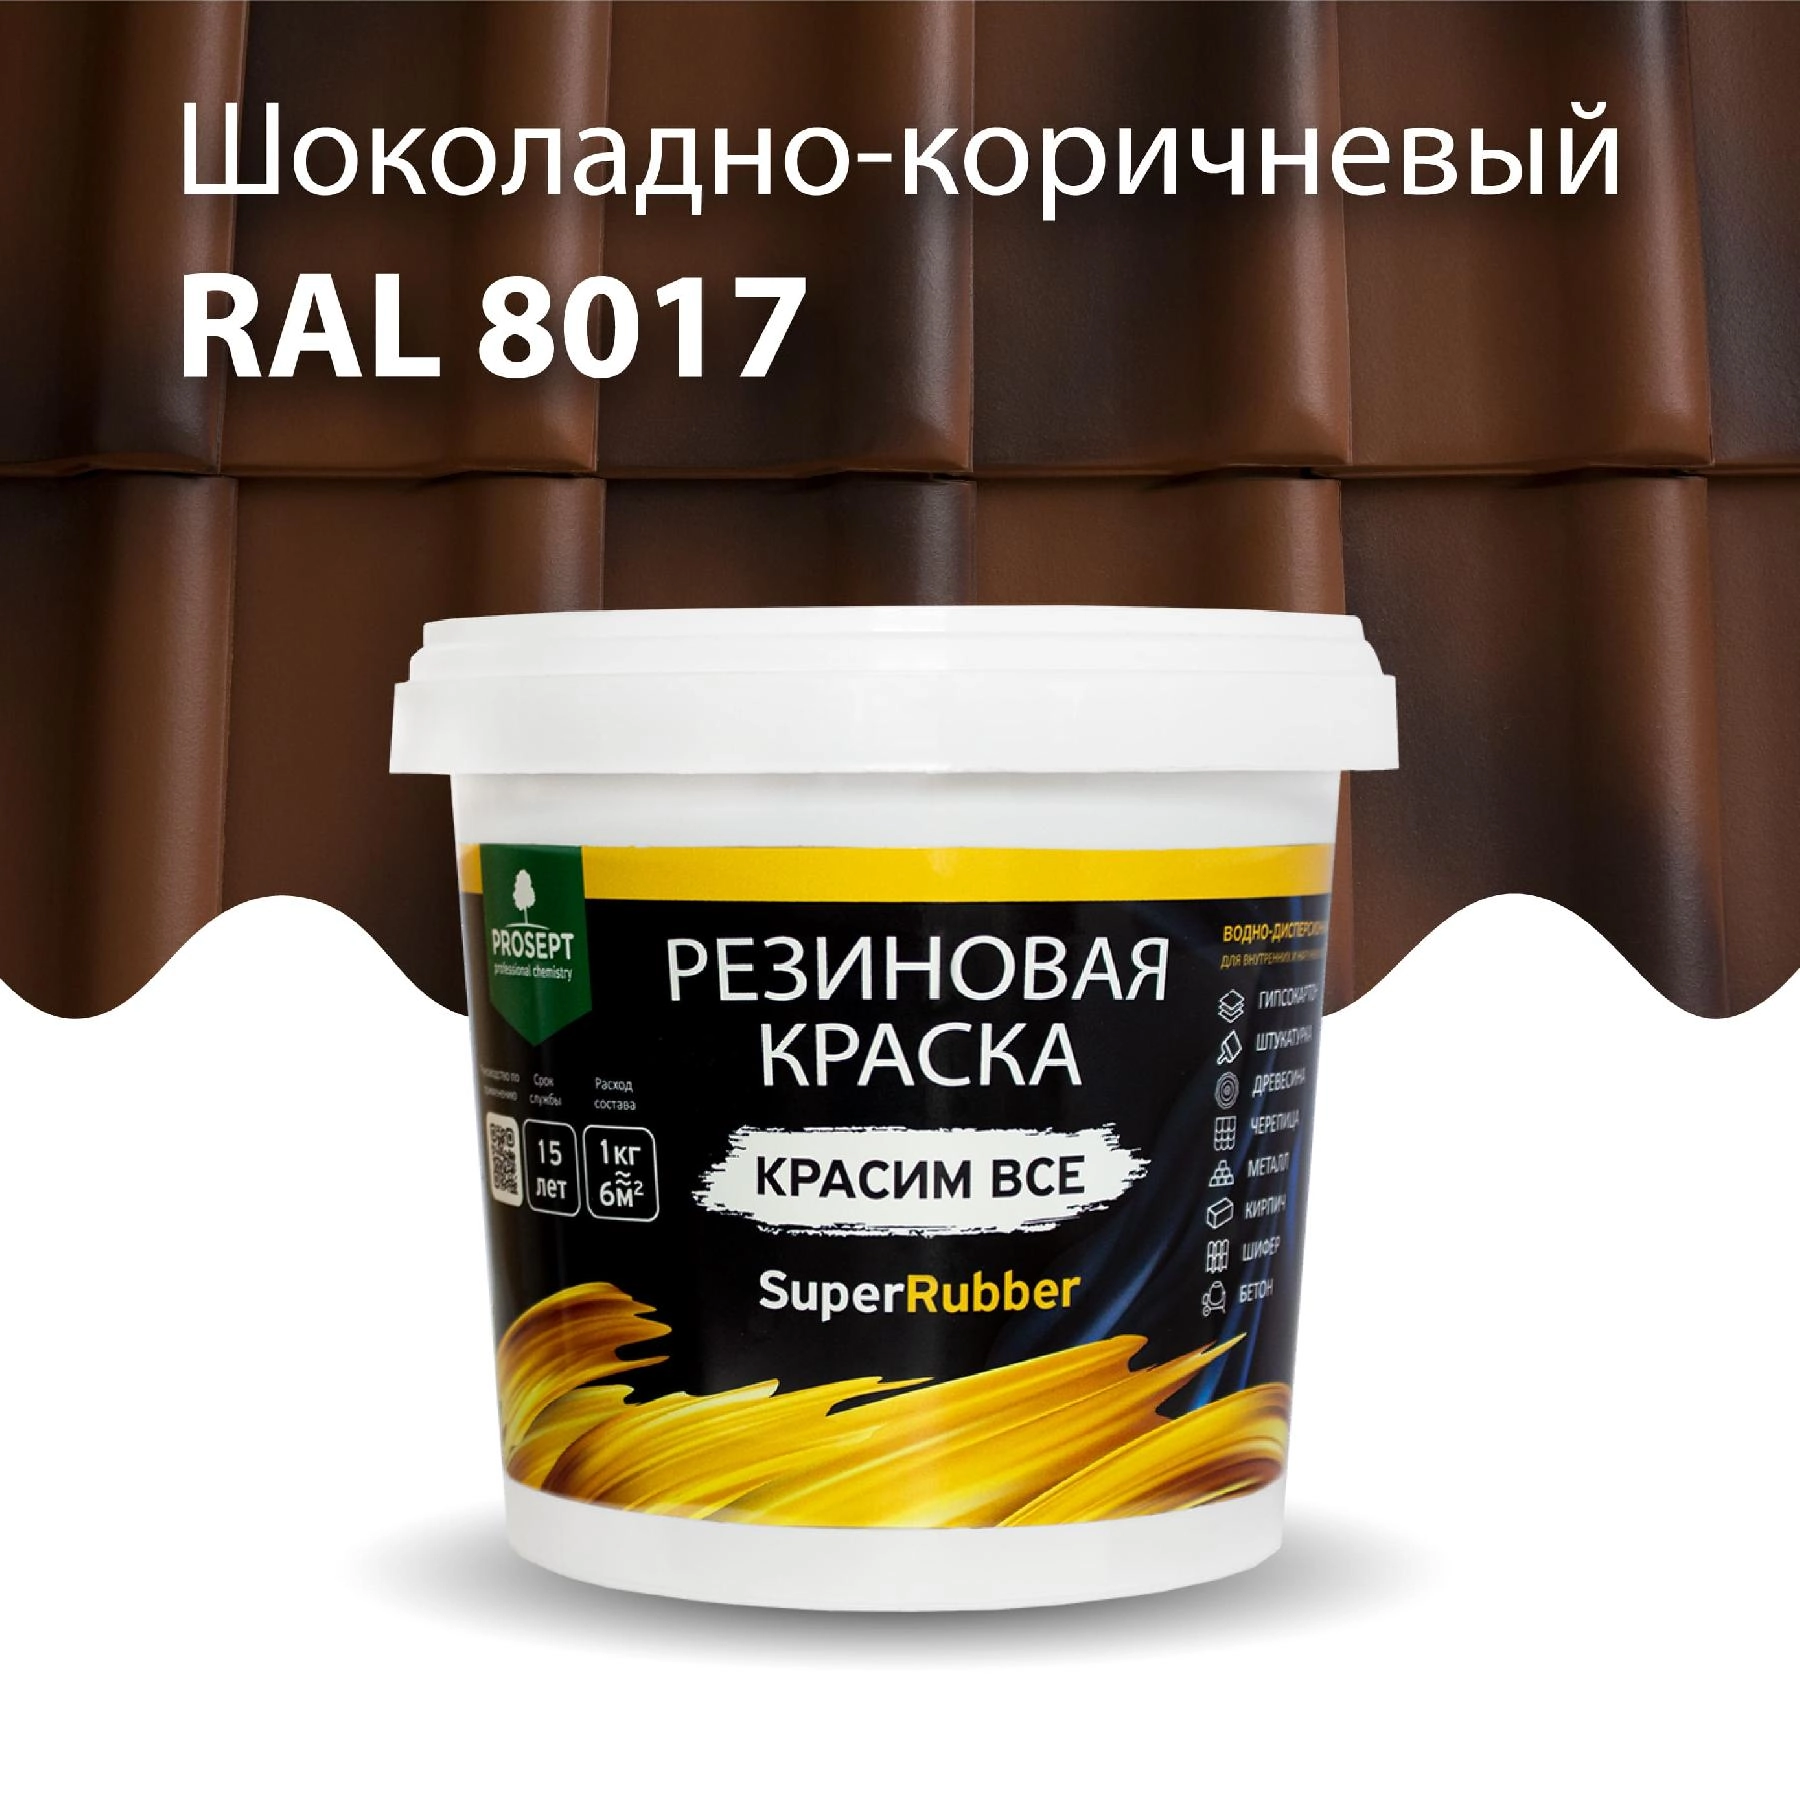 Краска резиновая PROSEPT SuperRubber, шоколадно-коричневый Ral 8017 / 12 кг